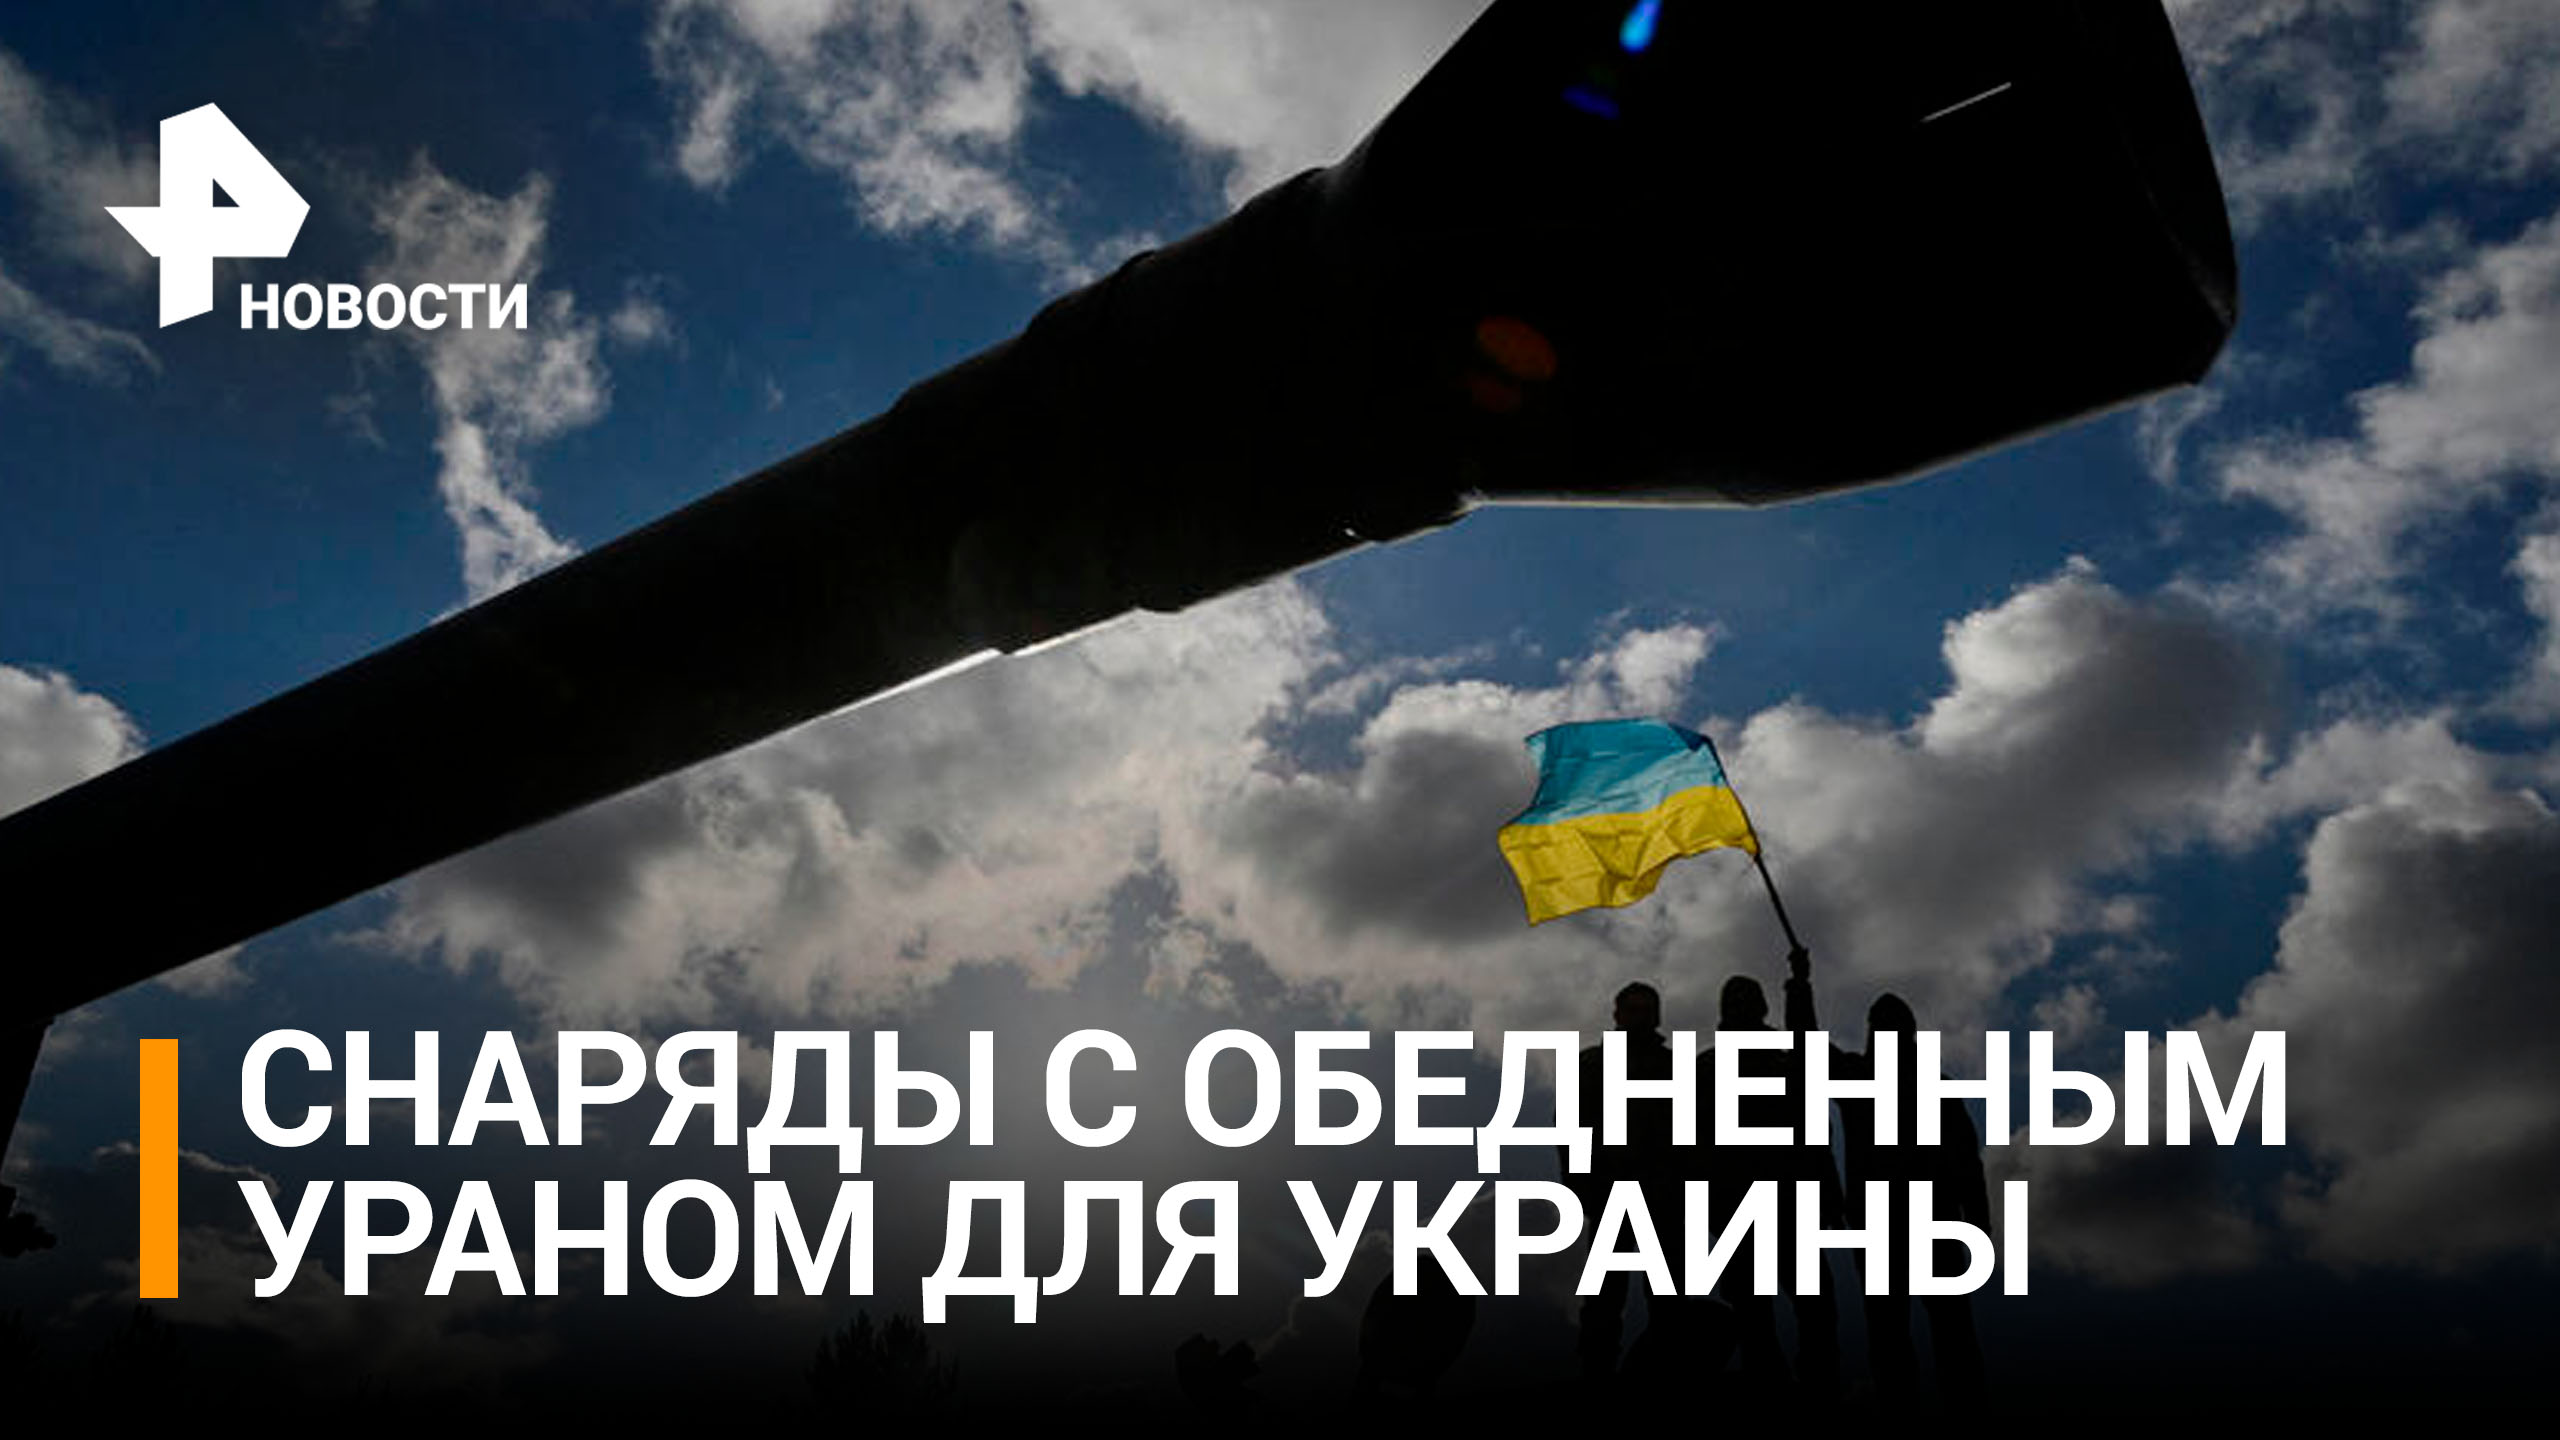 Британия хочет передать Украине снаряды с обедненным ураном / РЕН Новости